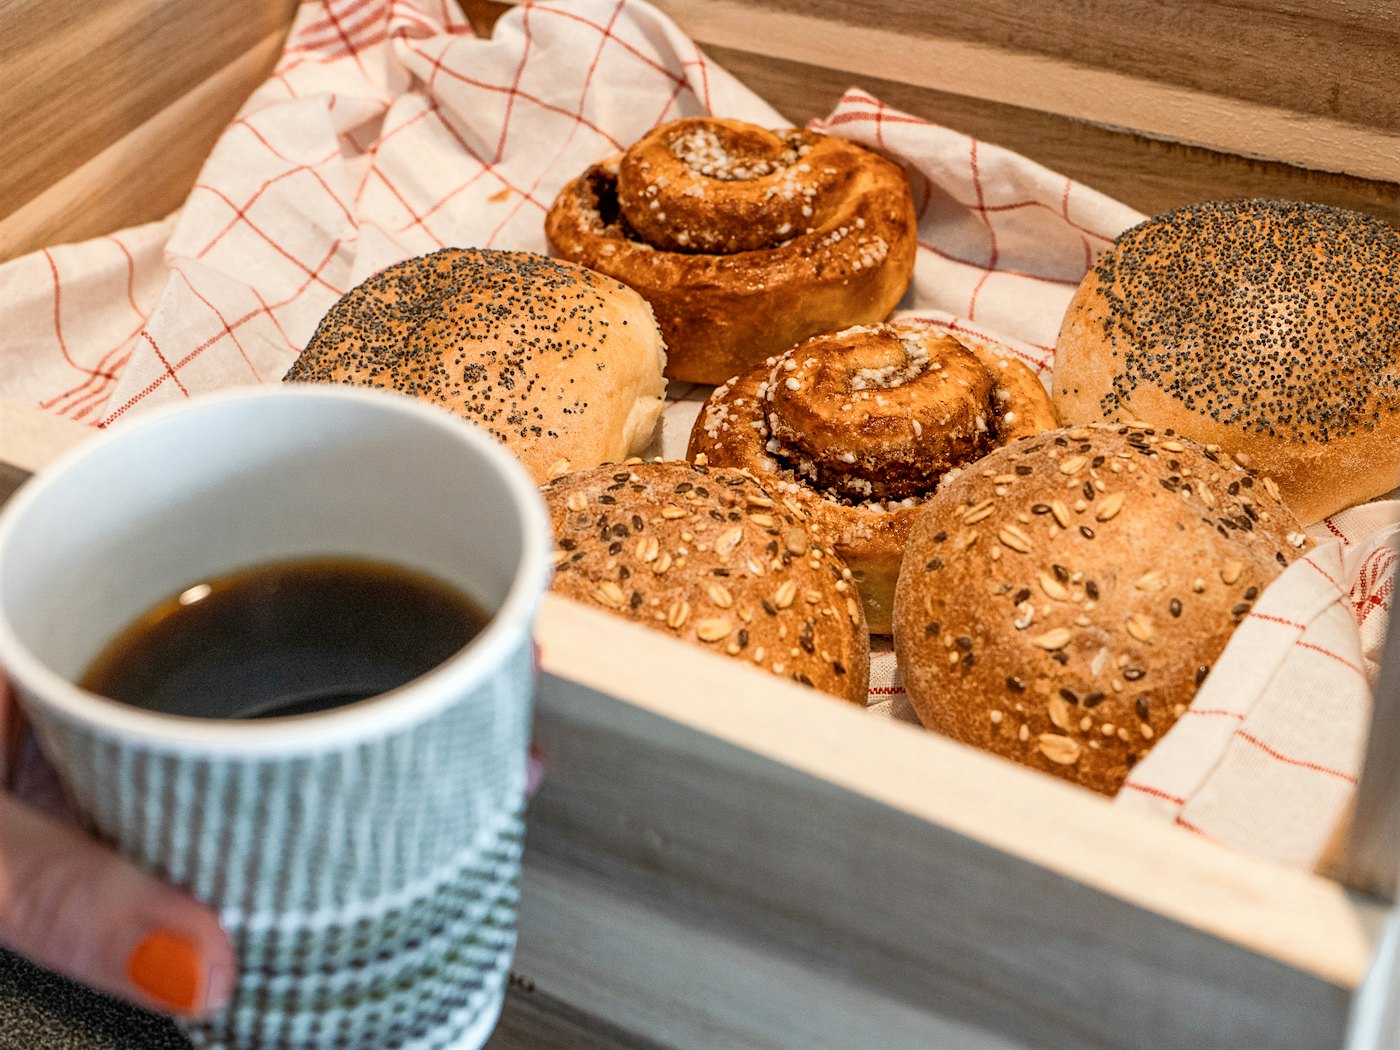 Holzkiste mit Zimtschnecken und Brötchen, Kaffeetasse im Vordergrund. Foto